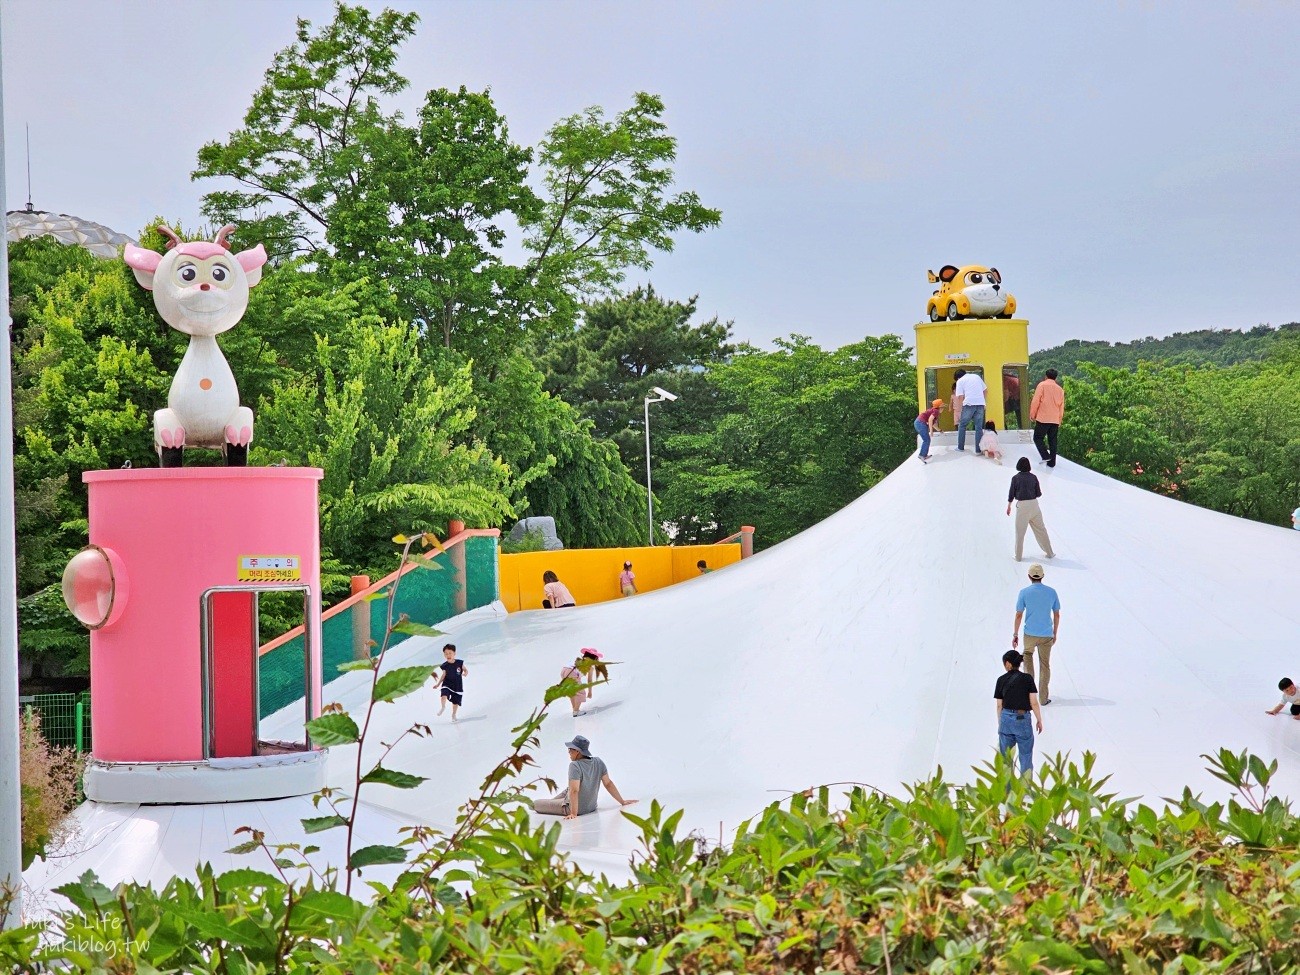 【韓國自由行】首爾推薦必玩6個遊樂園、親子景點攻略！必玩重點&購票連結 - yukiblog.tw